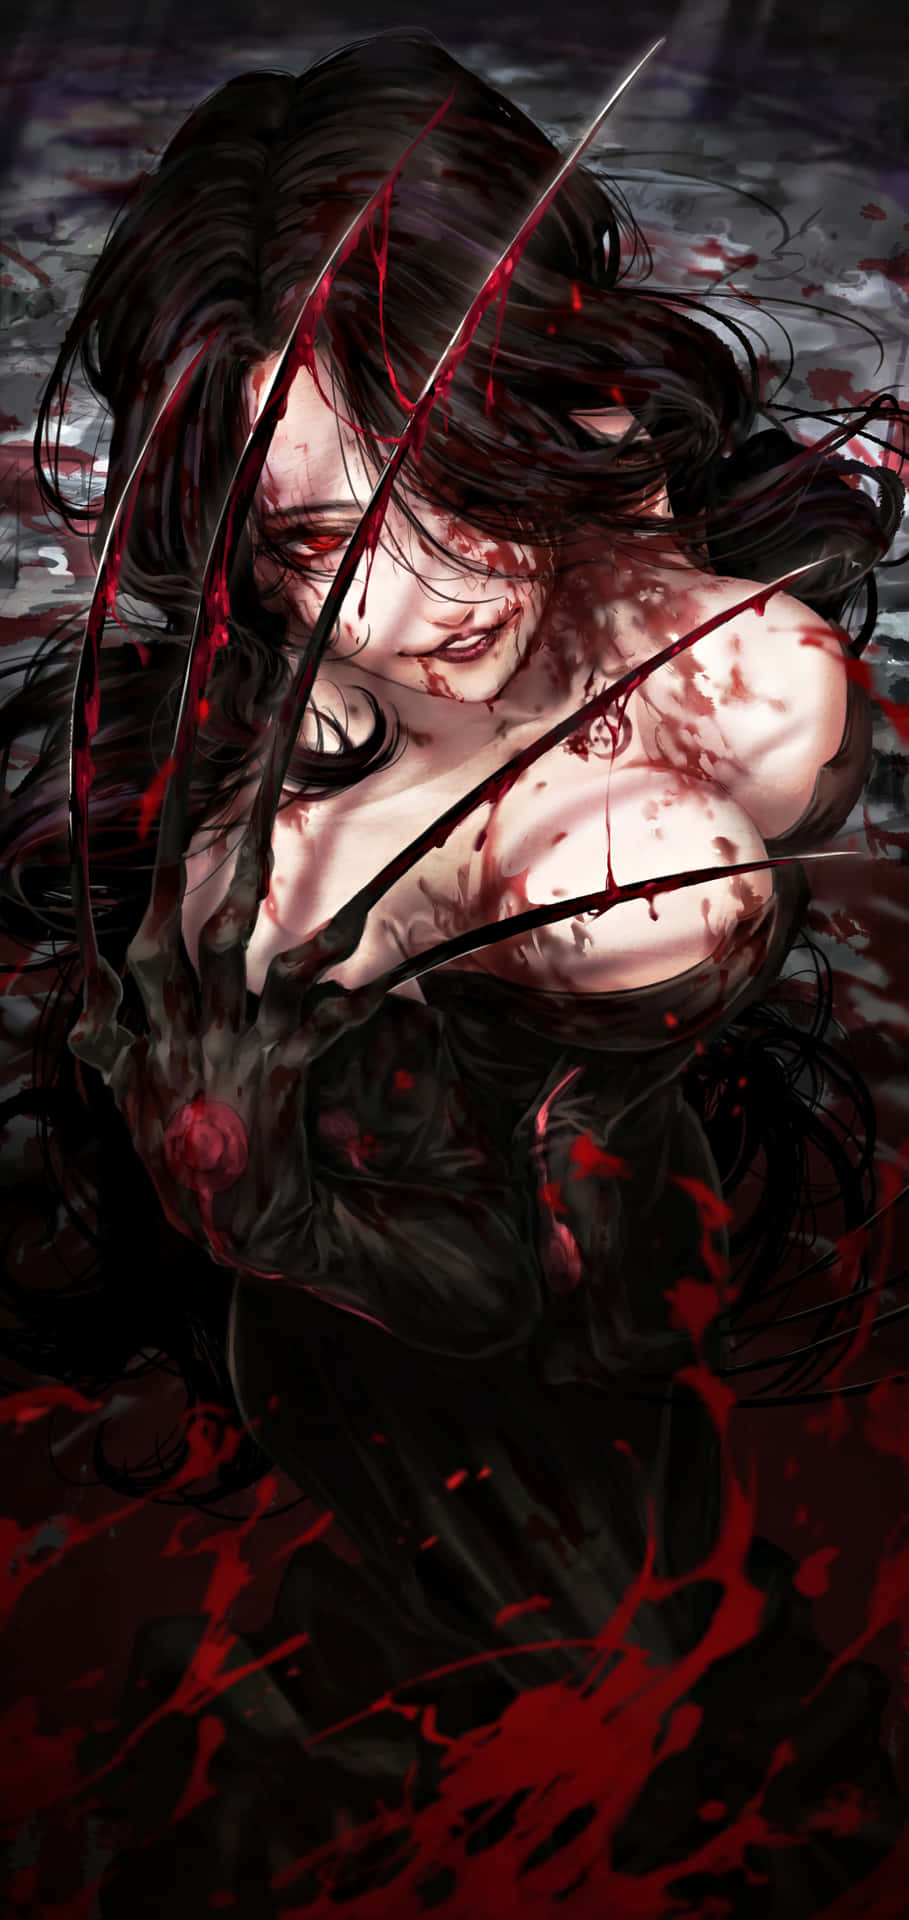 Lust, the embodiment of desire, from the popular series Fullmetal Alchemist. Wallpaper